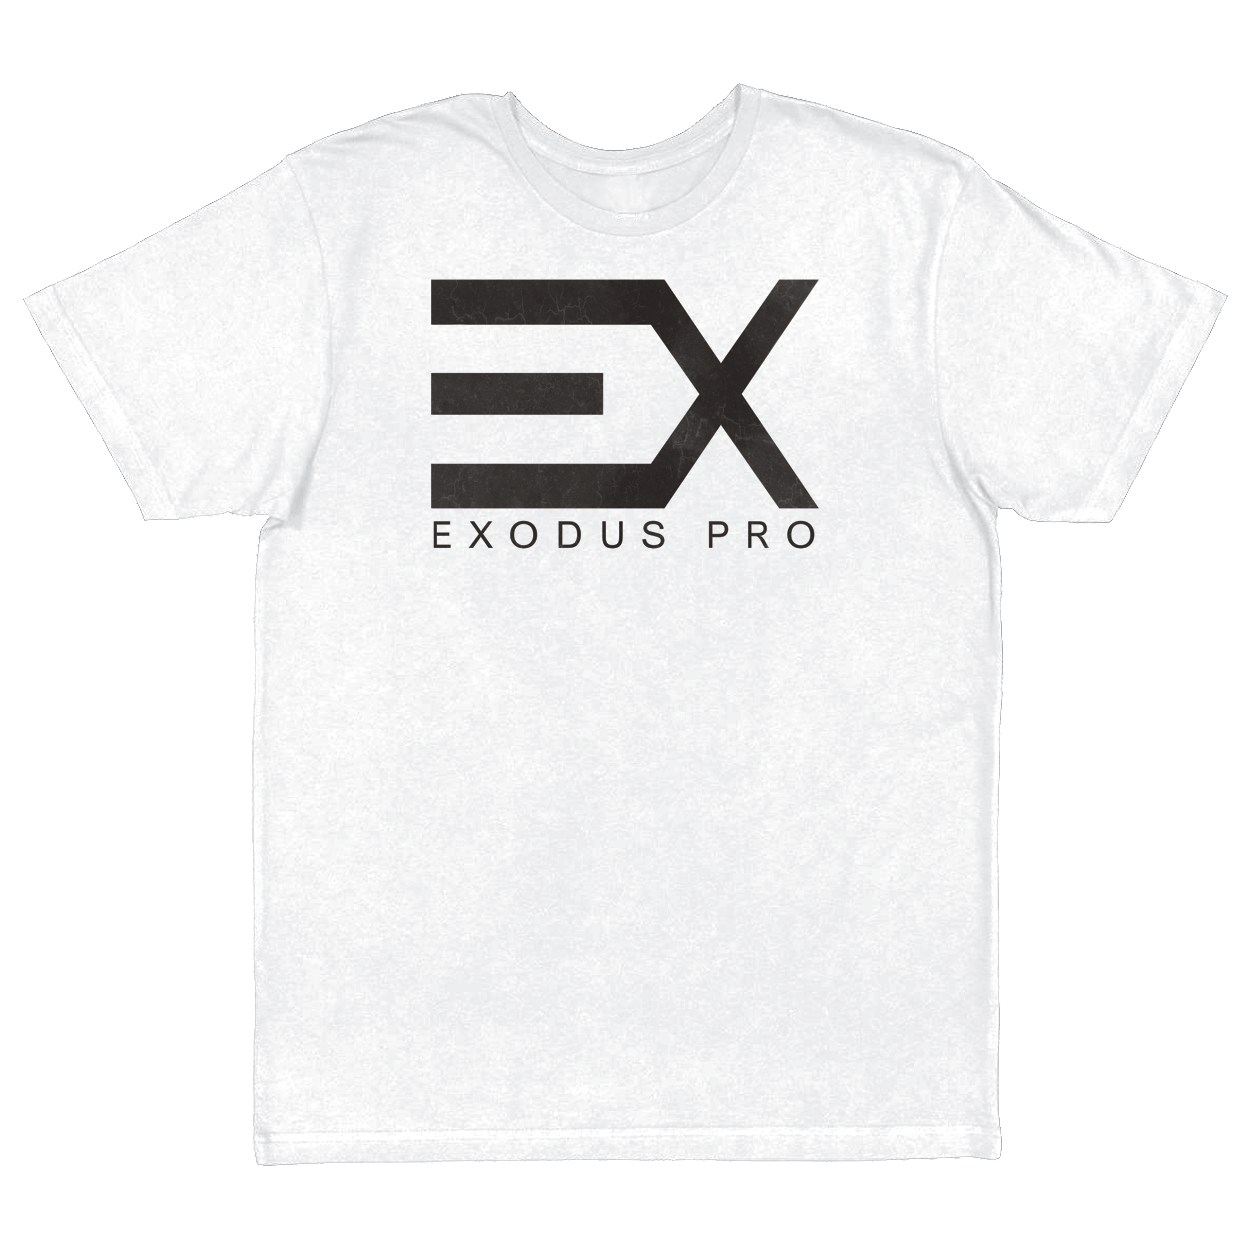 Exodus Pro (T-Shirt) Next Level